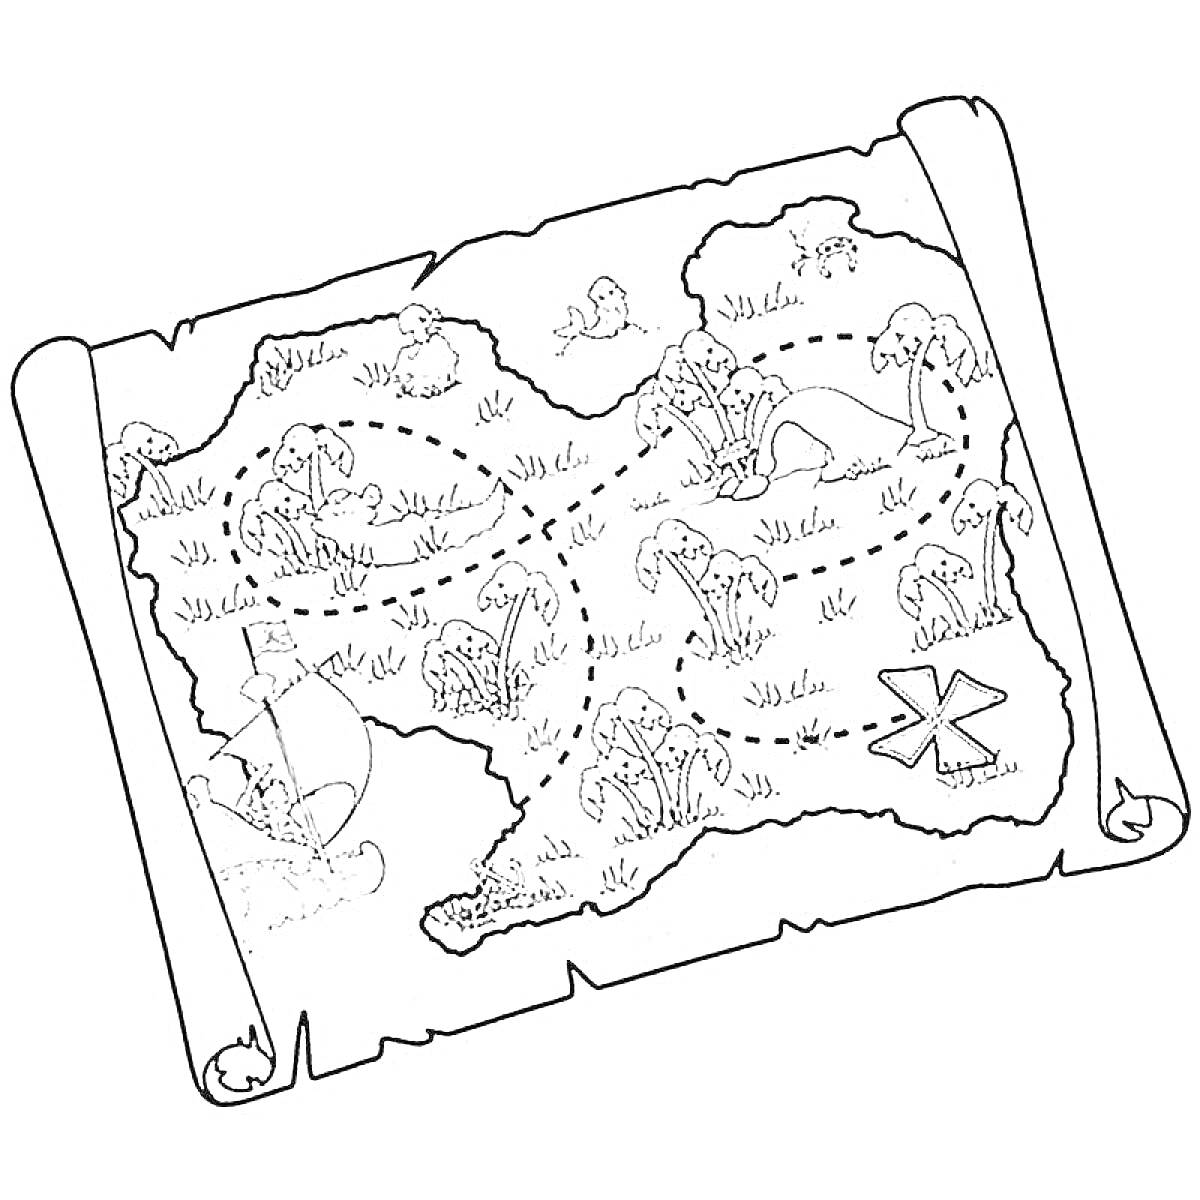 Карта сокровищ с островами, деревьями, кораблем и пиратским черепом